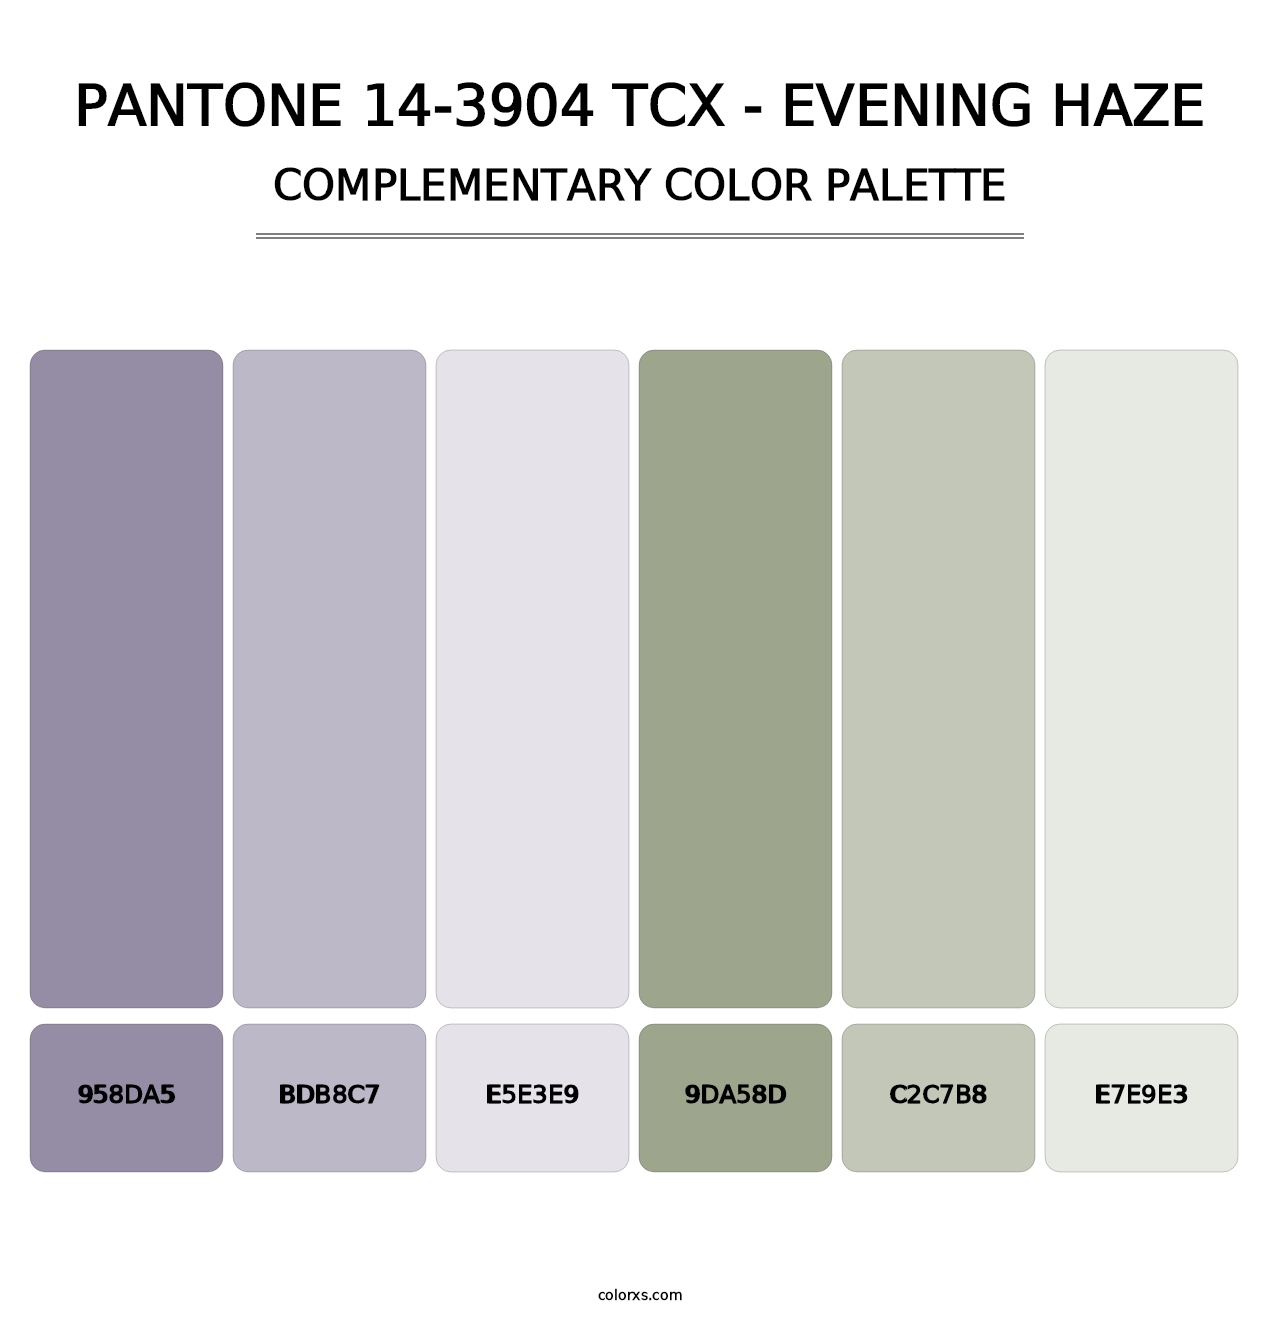 PANTONE 14-3904 TCX - Evening Haze - Complementary Color Palette